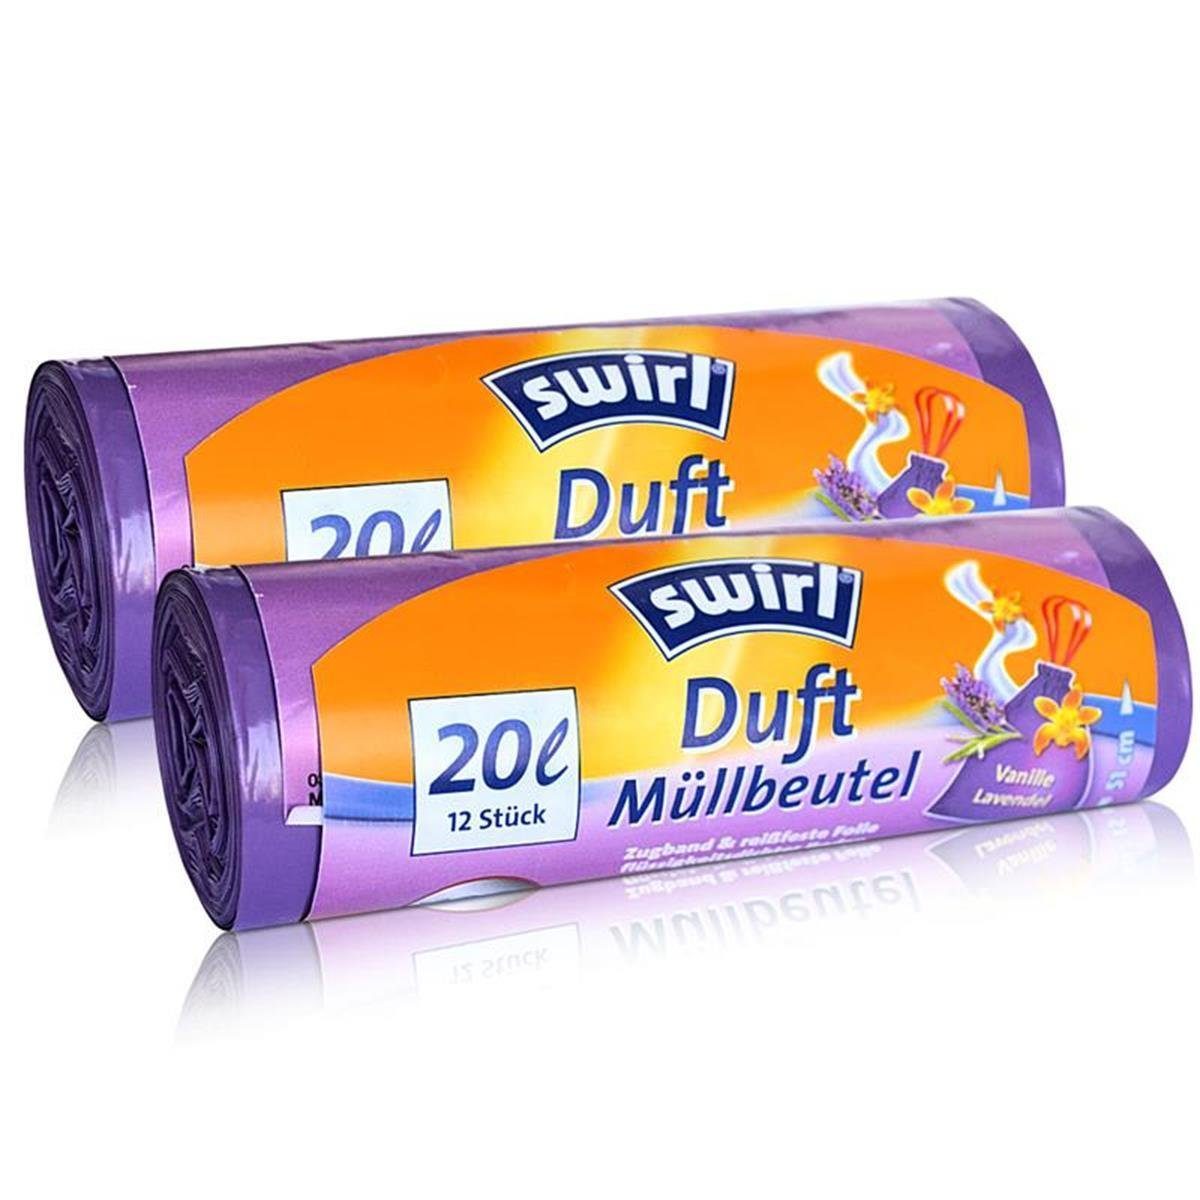 Duft Müllbeutel Lavendel 2x / Duf 20L Swirl Vanille Müllbeutel Rolle) stk./ (12 Swirl